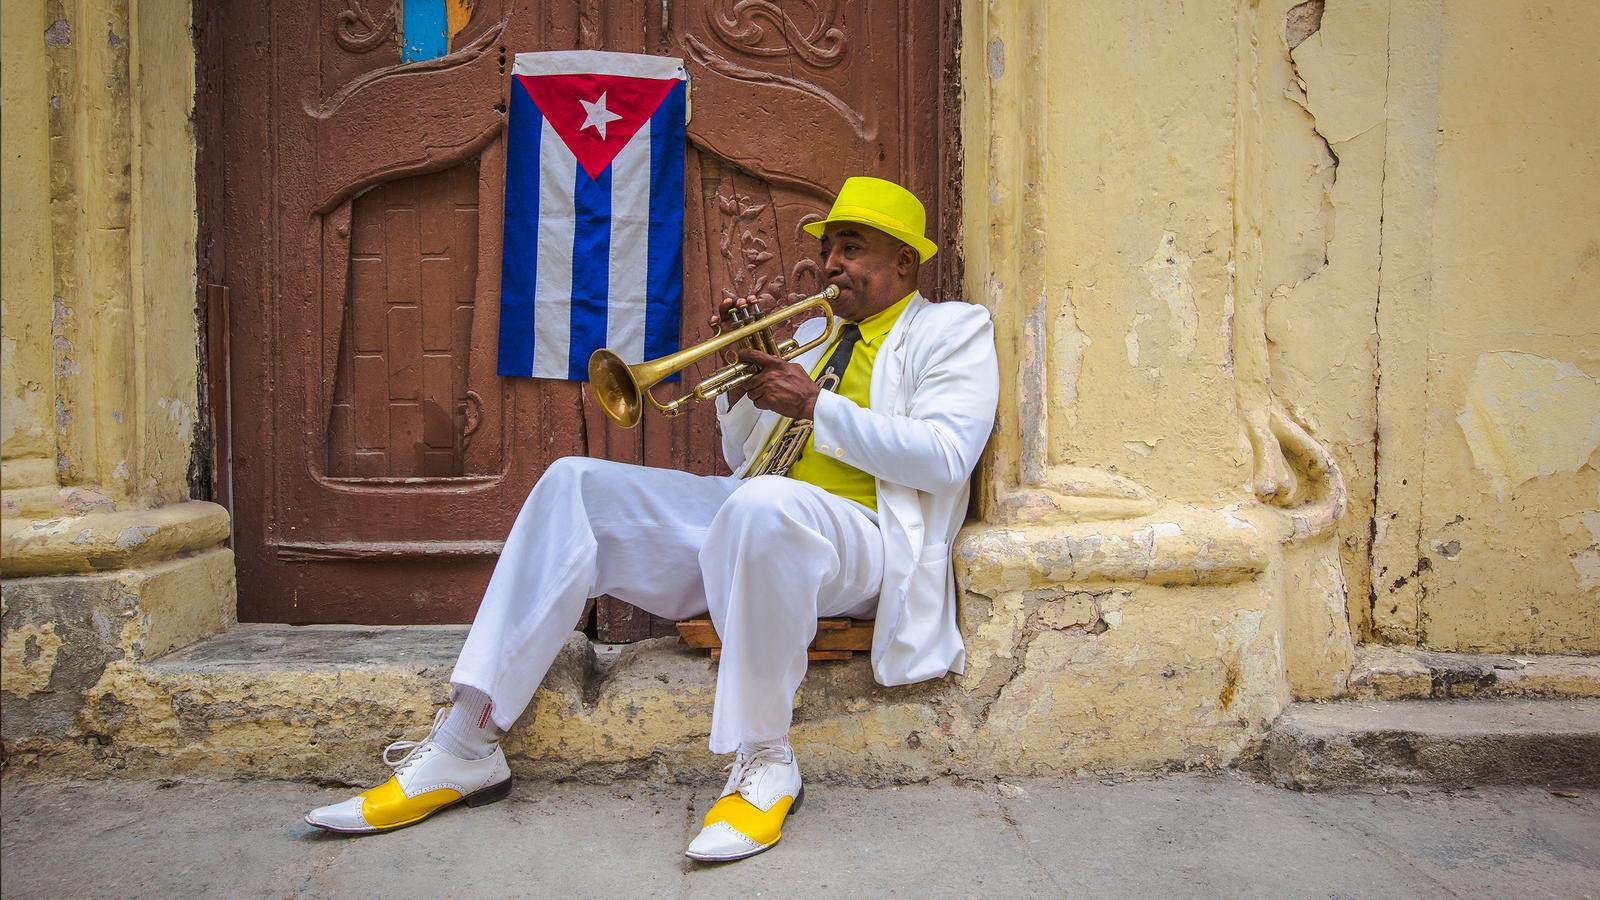 Cuban street musician